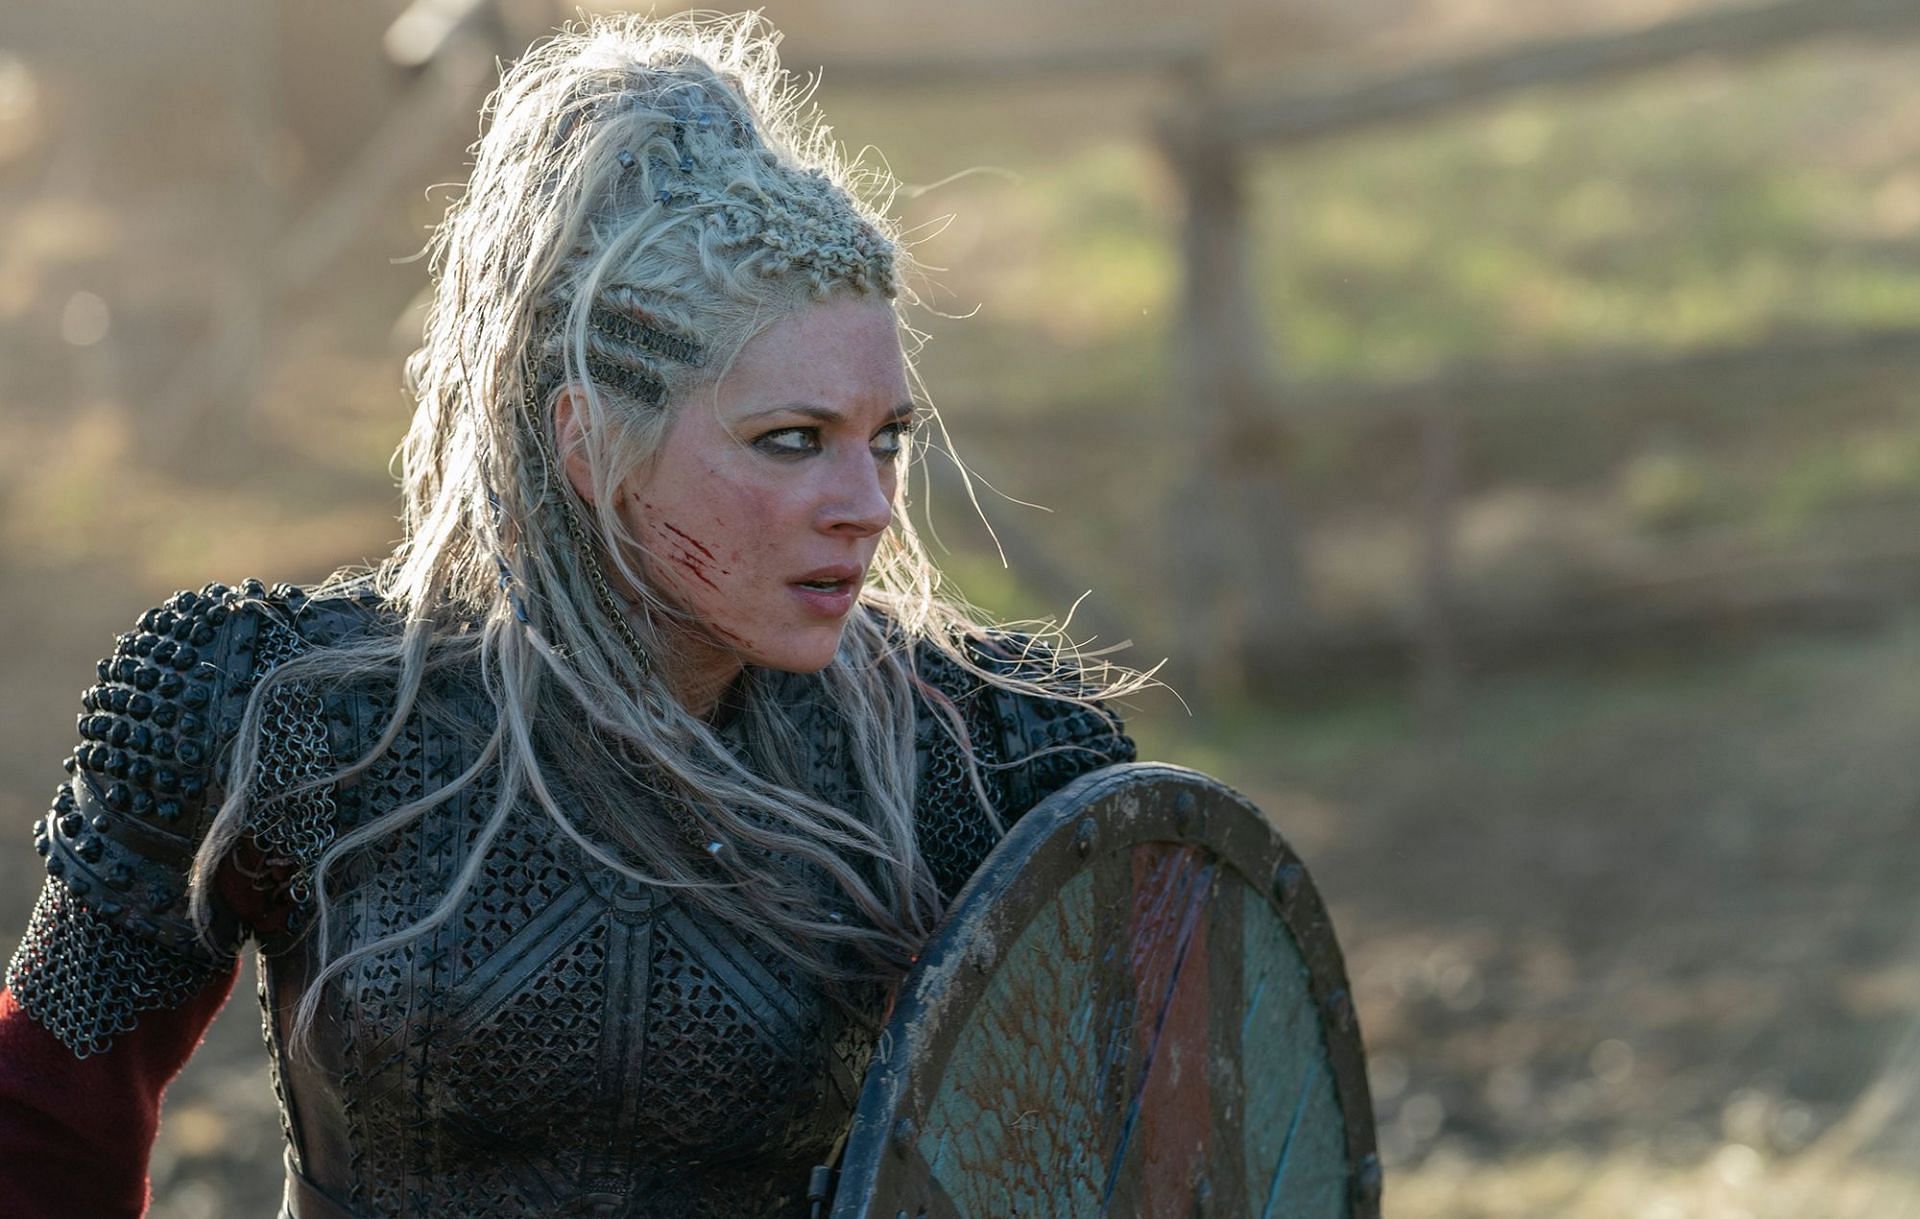 Katheryn Winnick as Lagertha in Vikings (Image via MGM) Adria Arjona in Andor (Image via Disney)